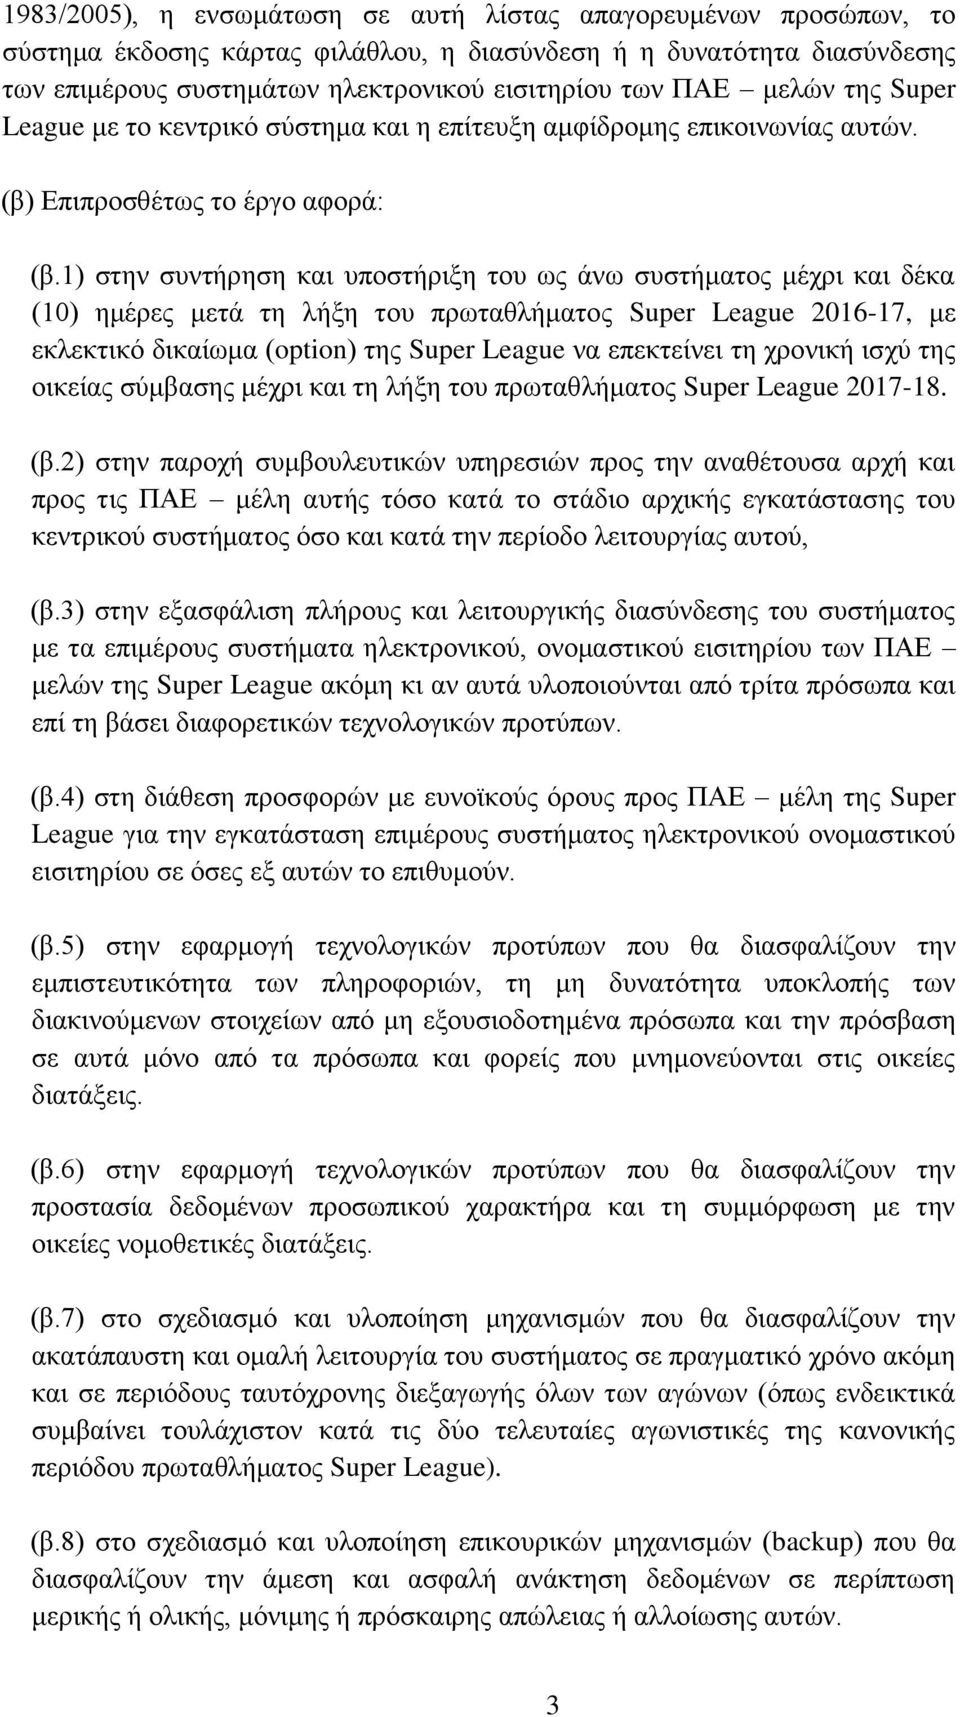 1) στην συντήρηση και υποστήριξη του ως άνω συστήματος μέχρι και δέκα (10) ημέρες μετά τη λήξη του πρωταθλήματος Super League 2016-17, με εκλεκτικό δικαίωμα (option) της Super League να επεκτείνει τη